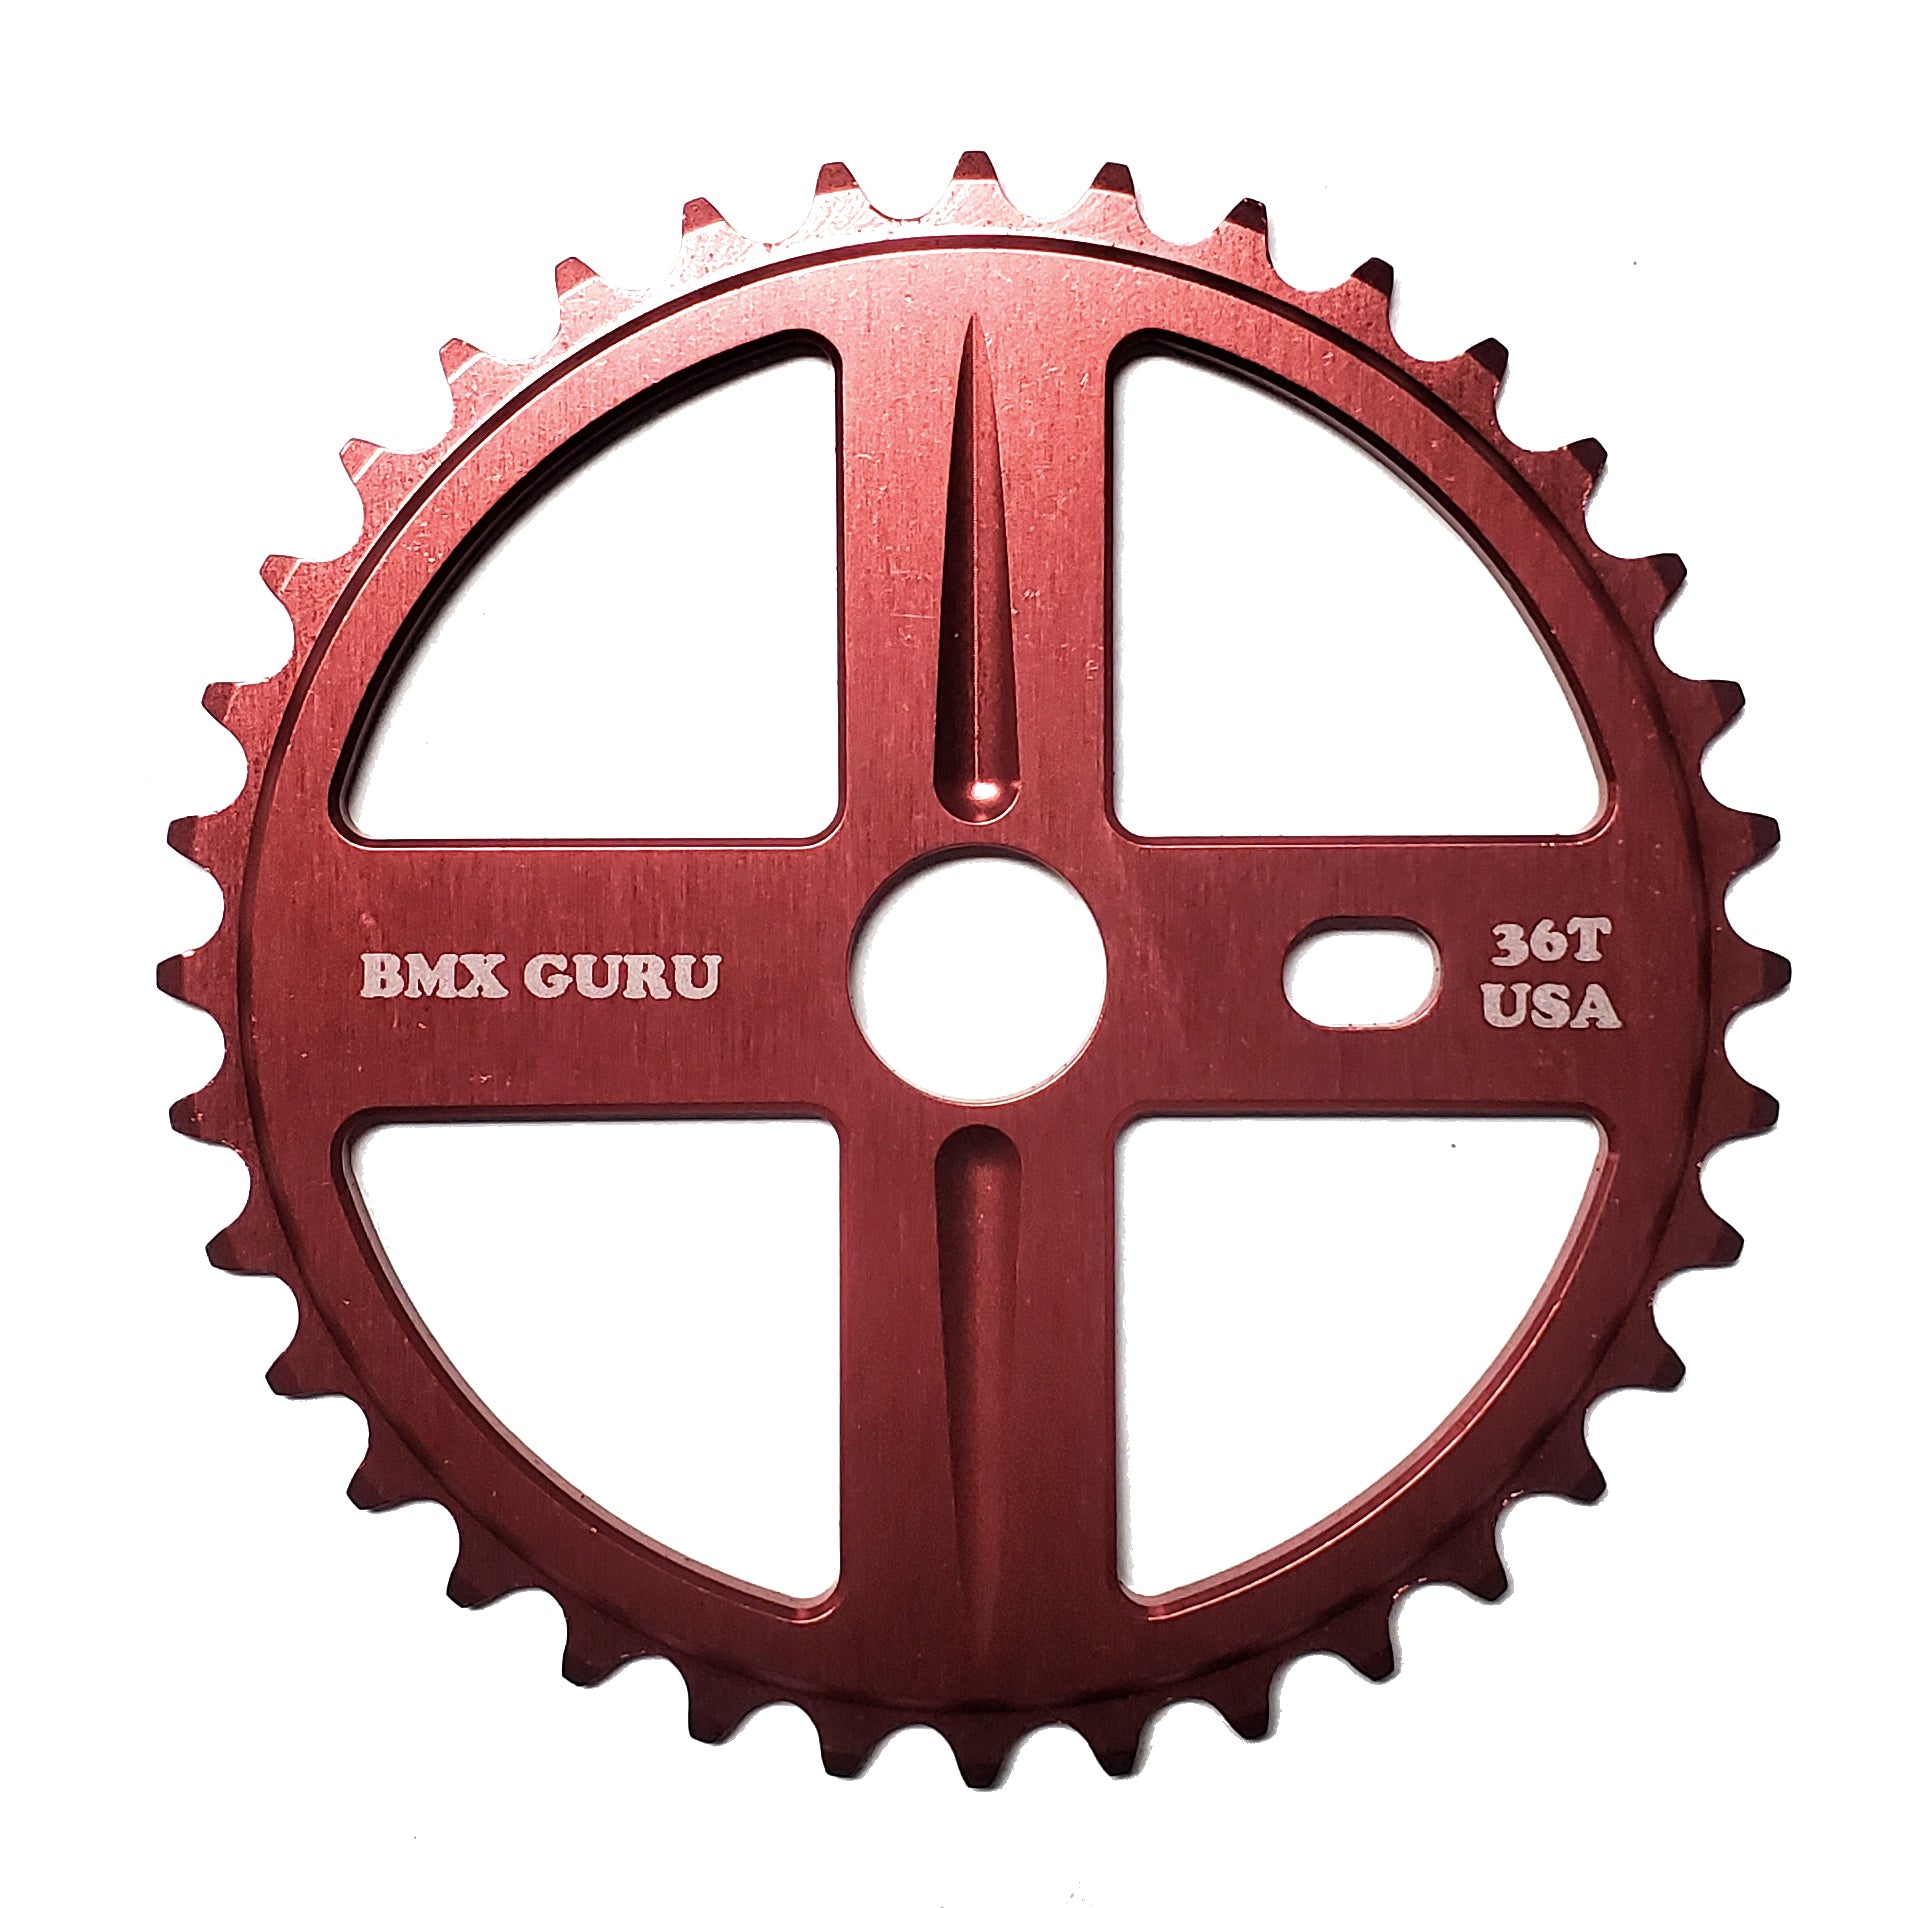 BMXGuru 36t Bolt Drive BMX Aluminum Sprocket / Chainwheel - Red - USA Made